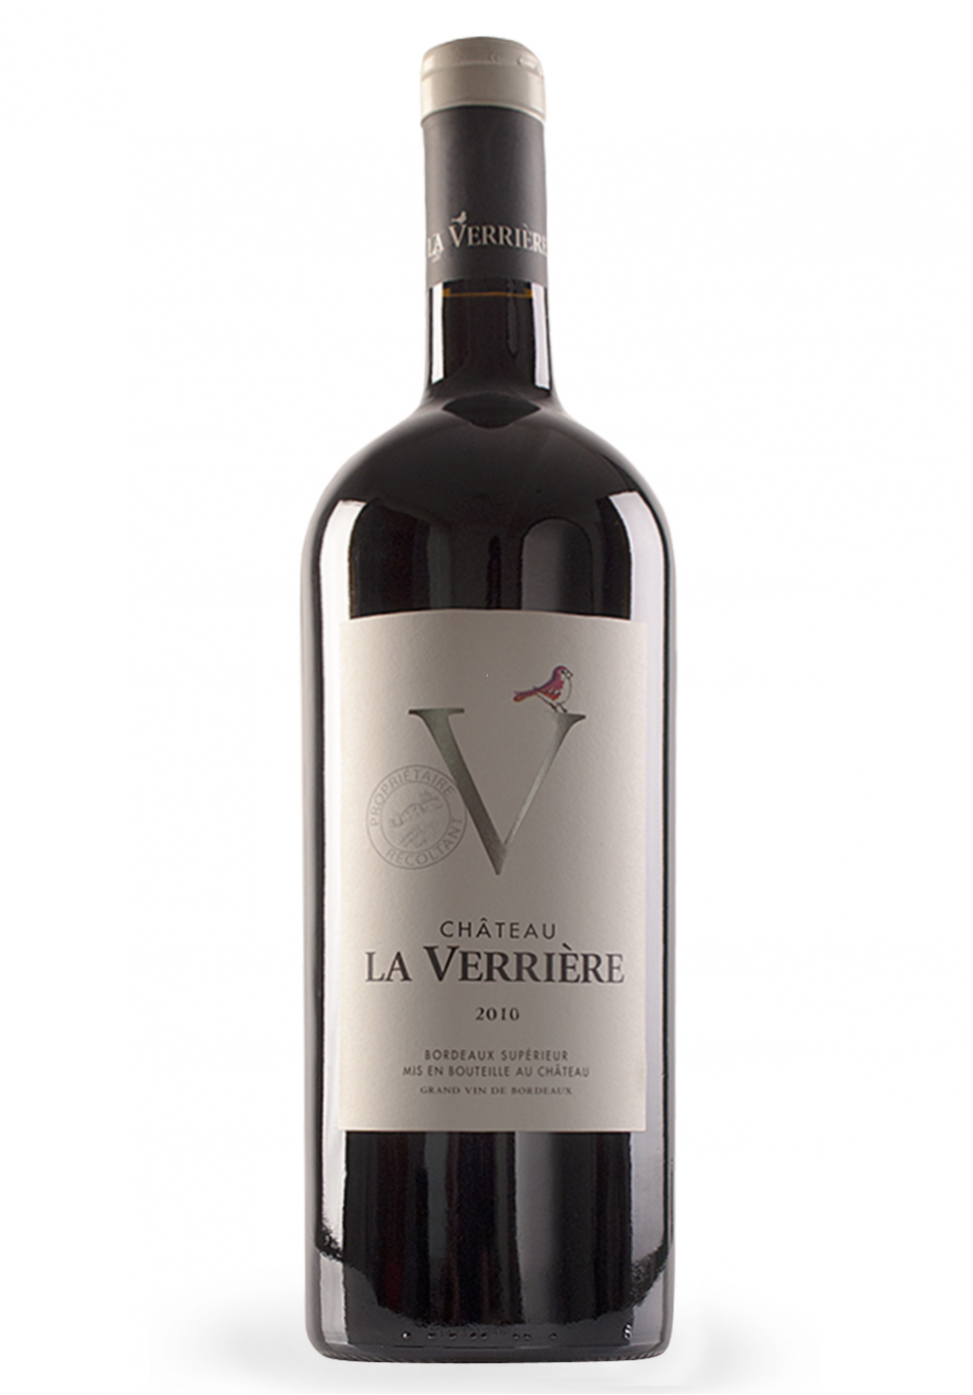 Vin Chateau La Verriere, Bordeaux Superieur Magnum 2011 (1.5L) Image